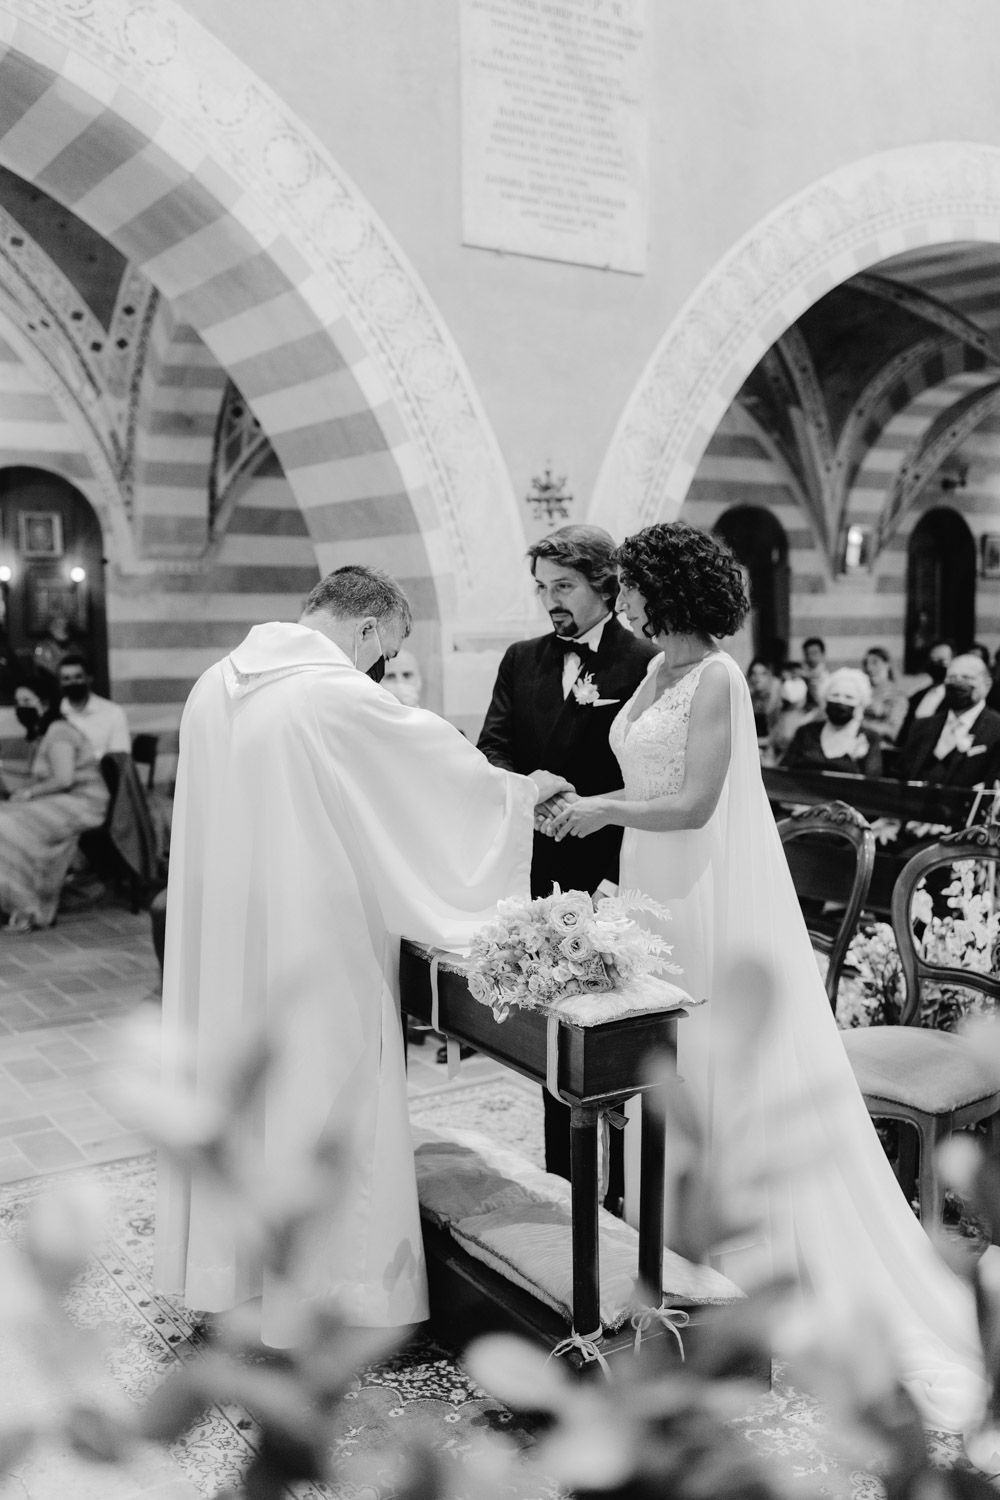 Mariage en Italie dans une demeure historique du Marche - Fabio + Marianna - Blog Mariage Madame C